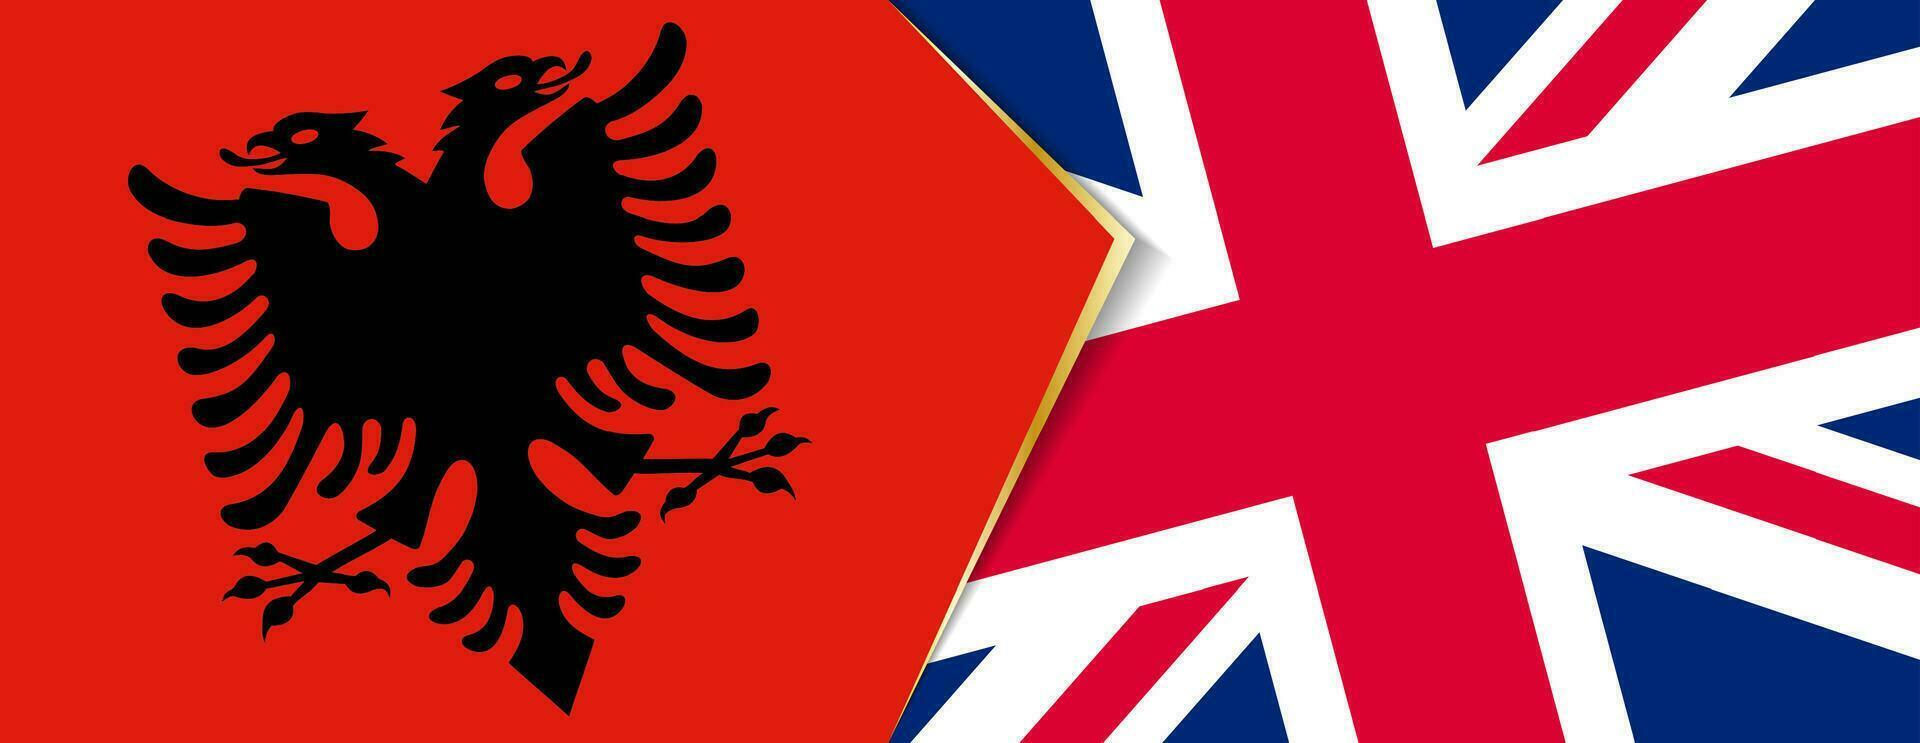 Albania e unito regno bandiere, Due vettore bandiere.